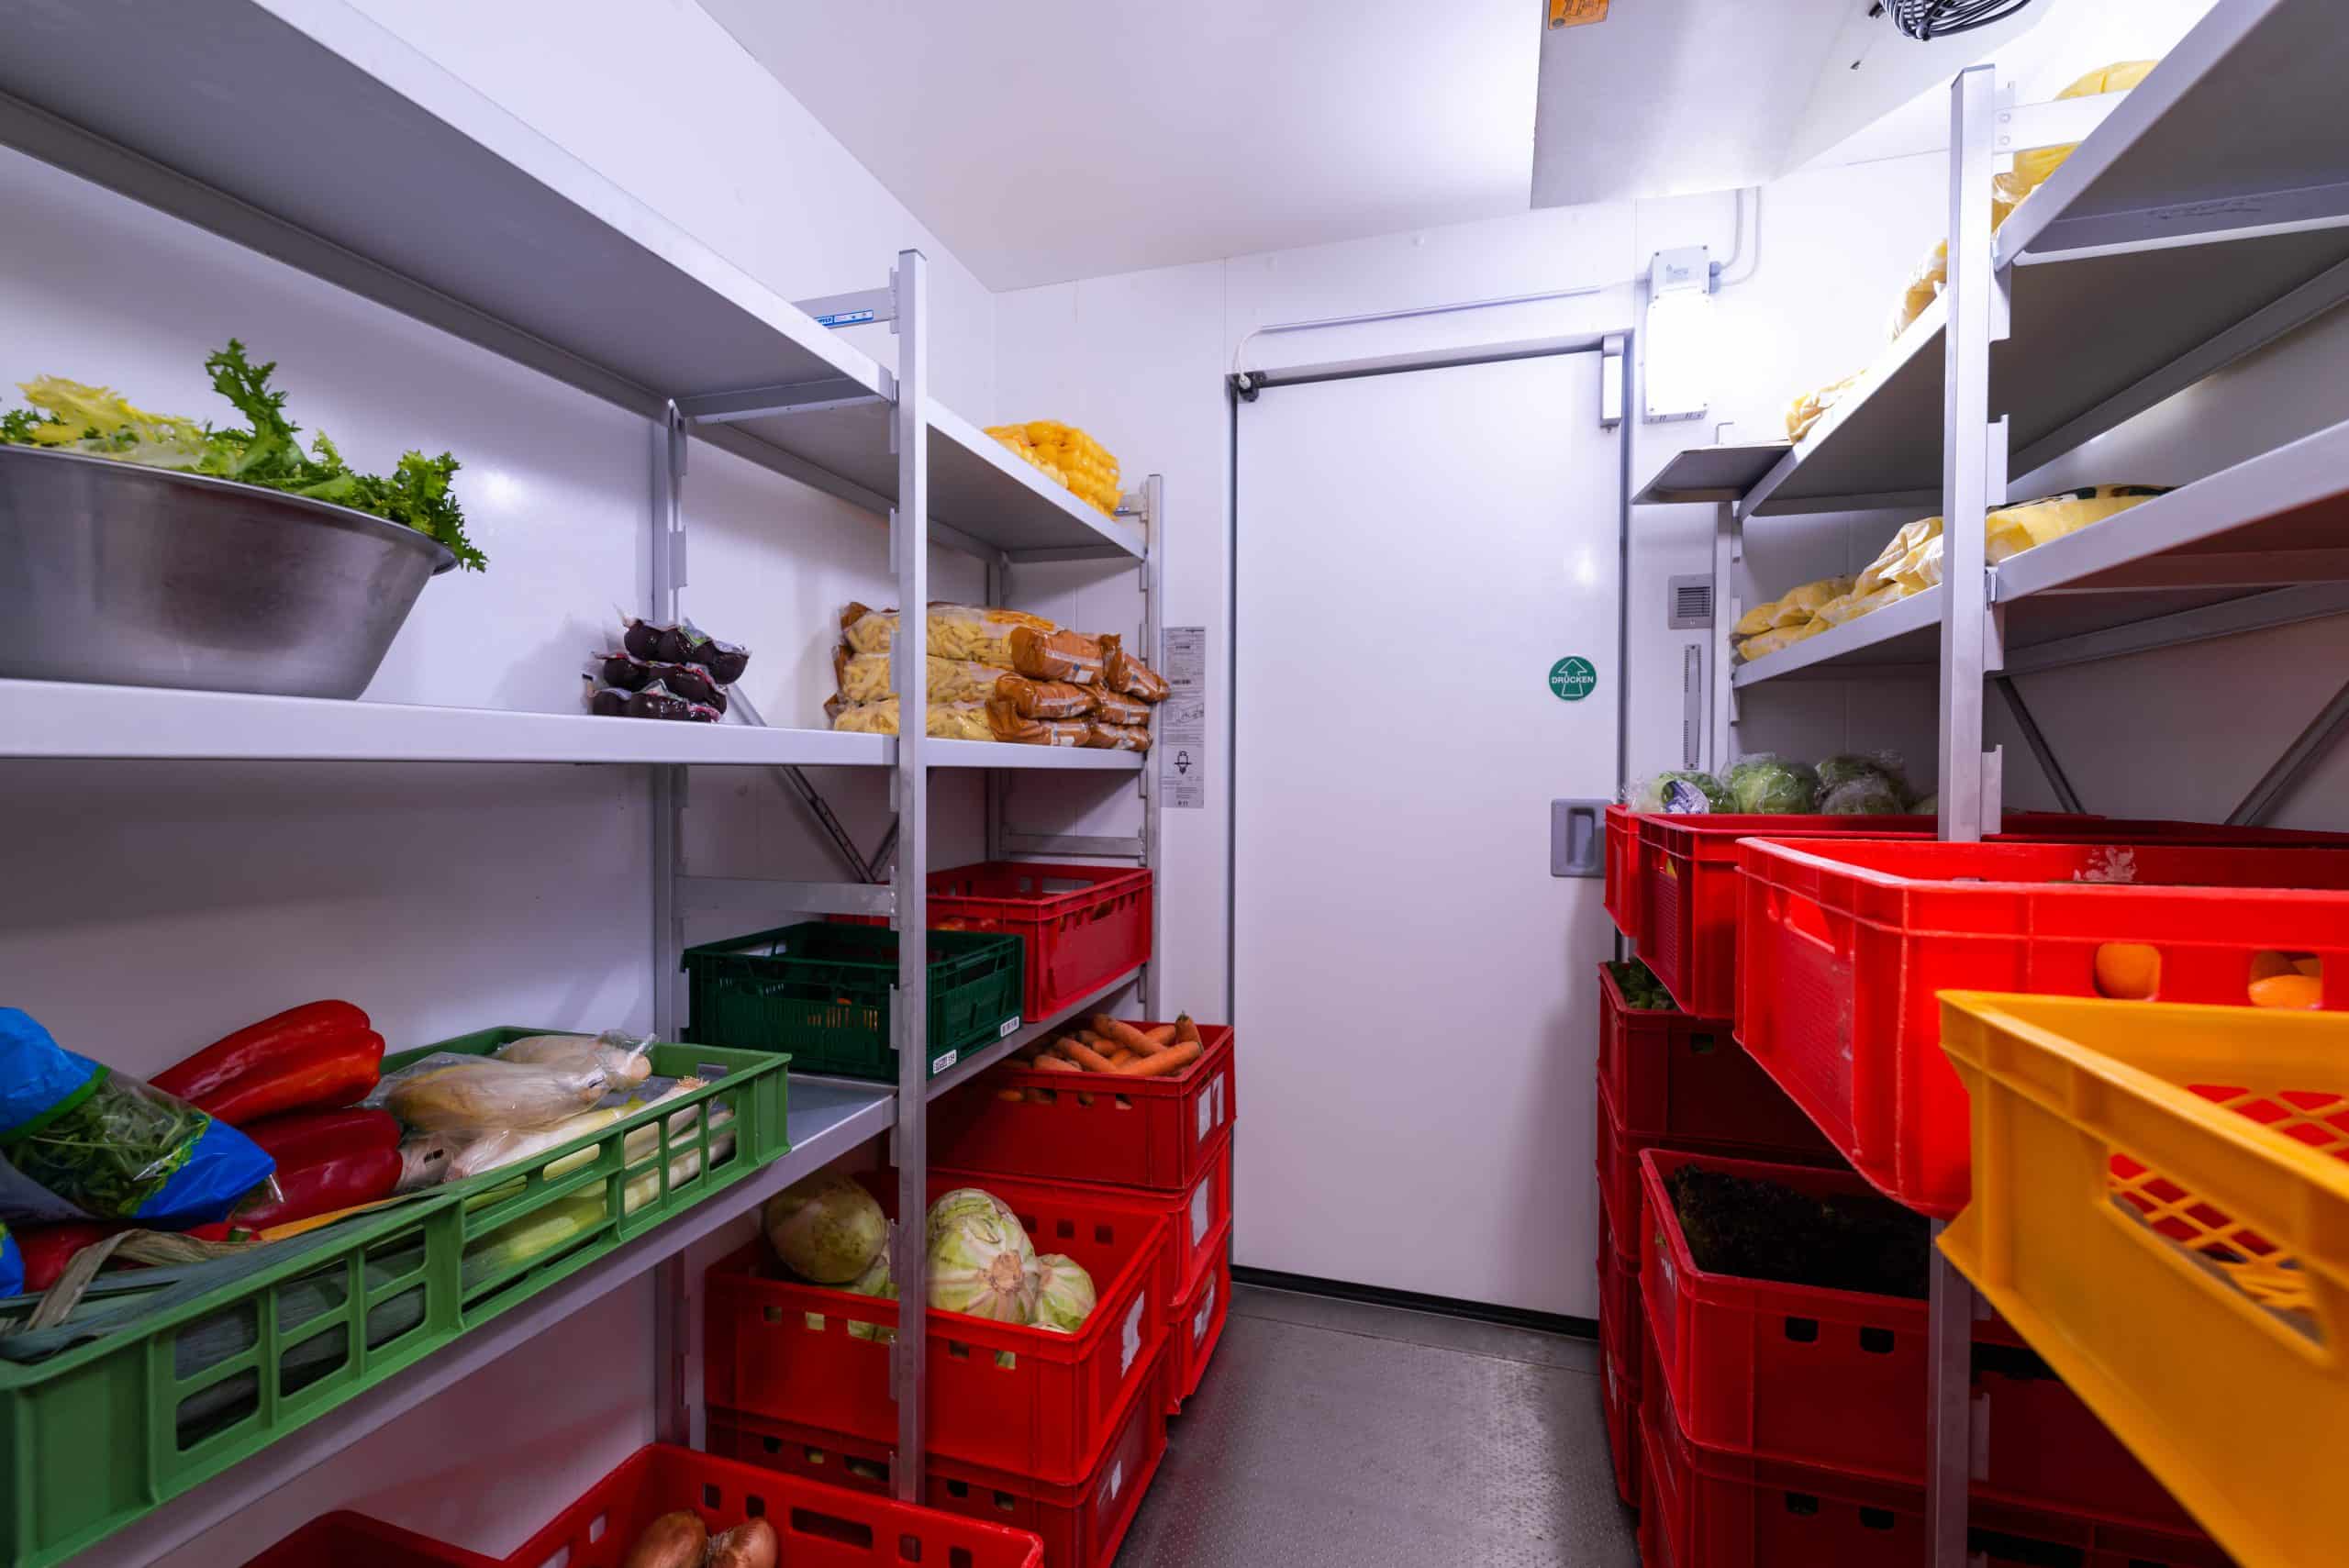 Kühlzelle von Viessmann mit Regalsystem und Lebensmitteln.